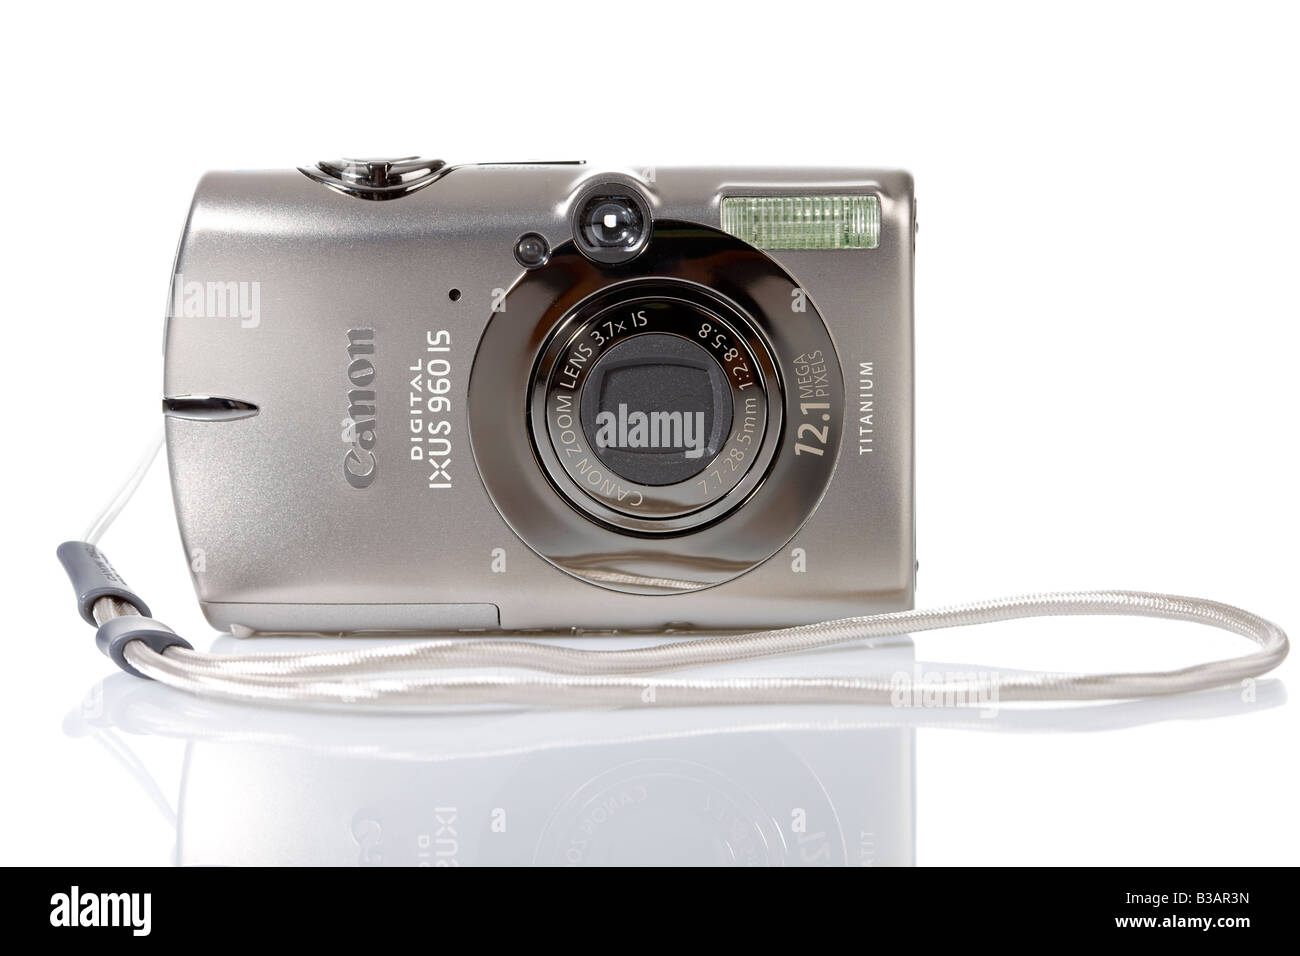 Canon Ixus 960 IS camera Stock Photo - Alamy